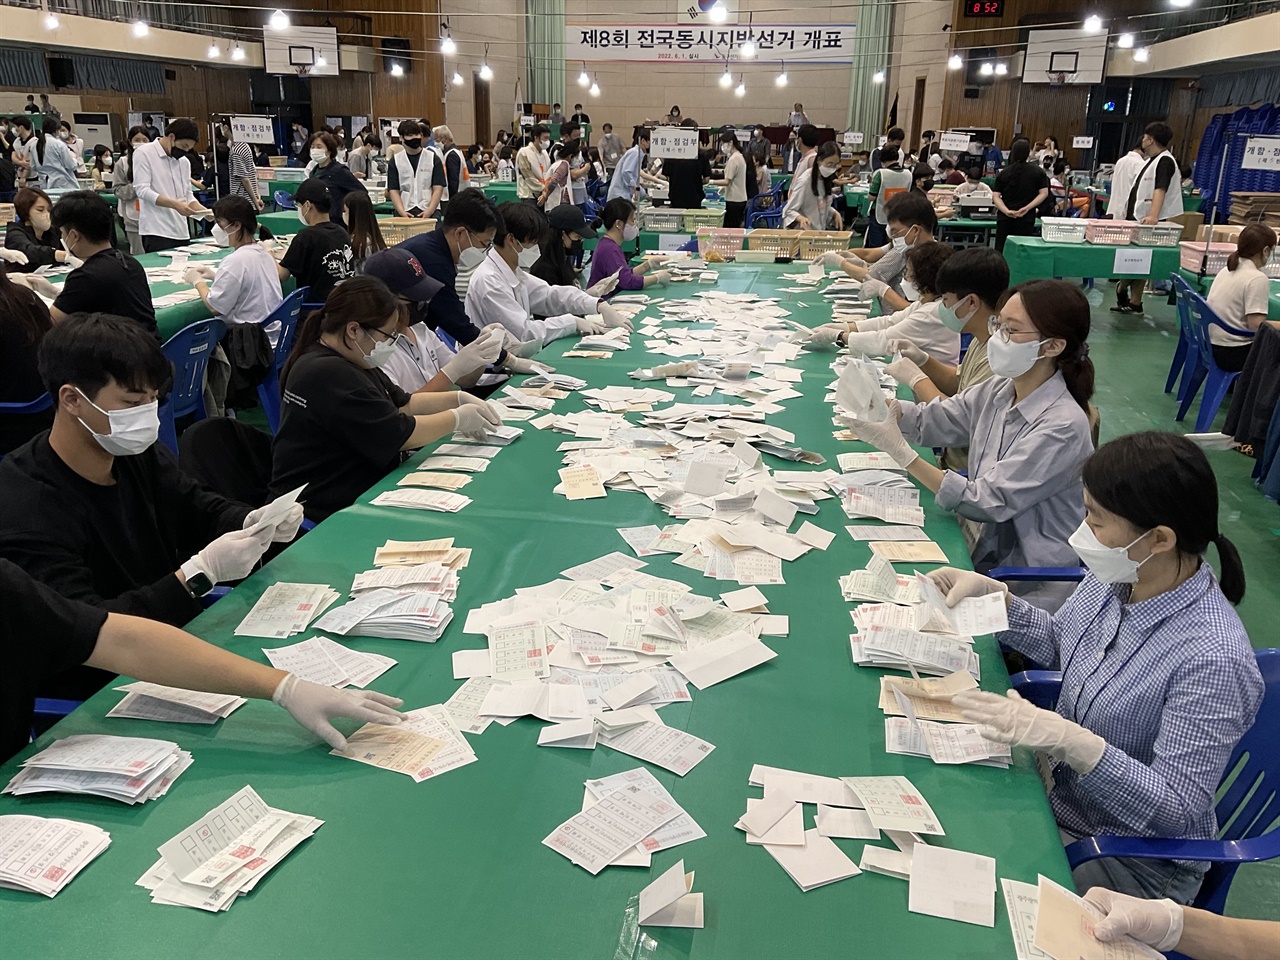 1일, 전남여자고등학교에서 6.1 지방선거 개표가 진행되고 있다.